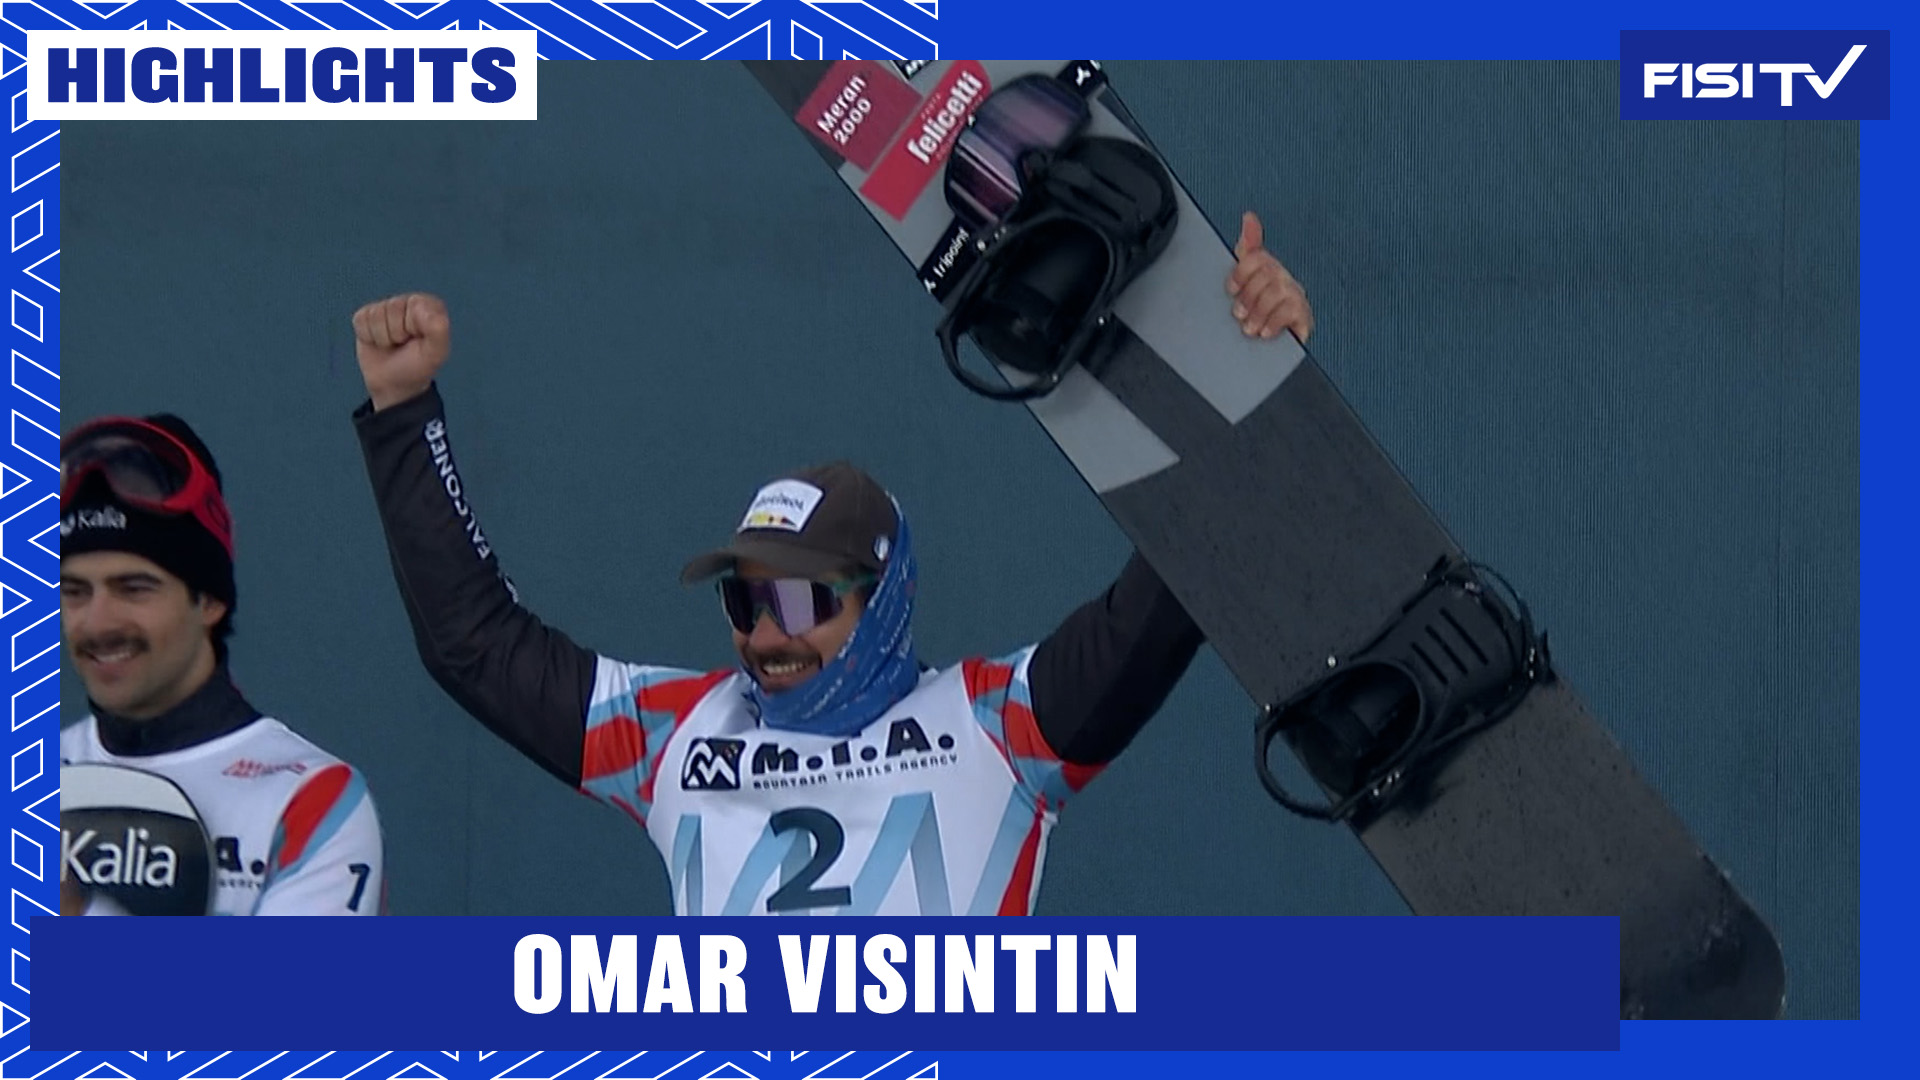 Omar Visintin conquista il podio anche a Gudauri | FISI TV